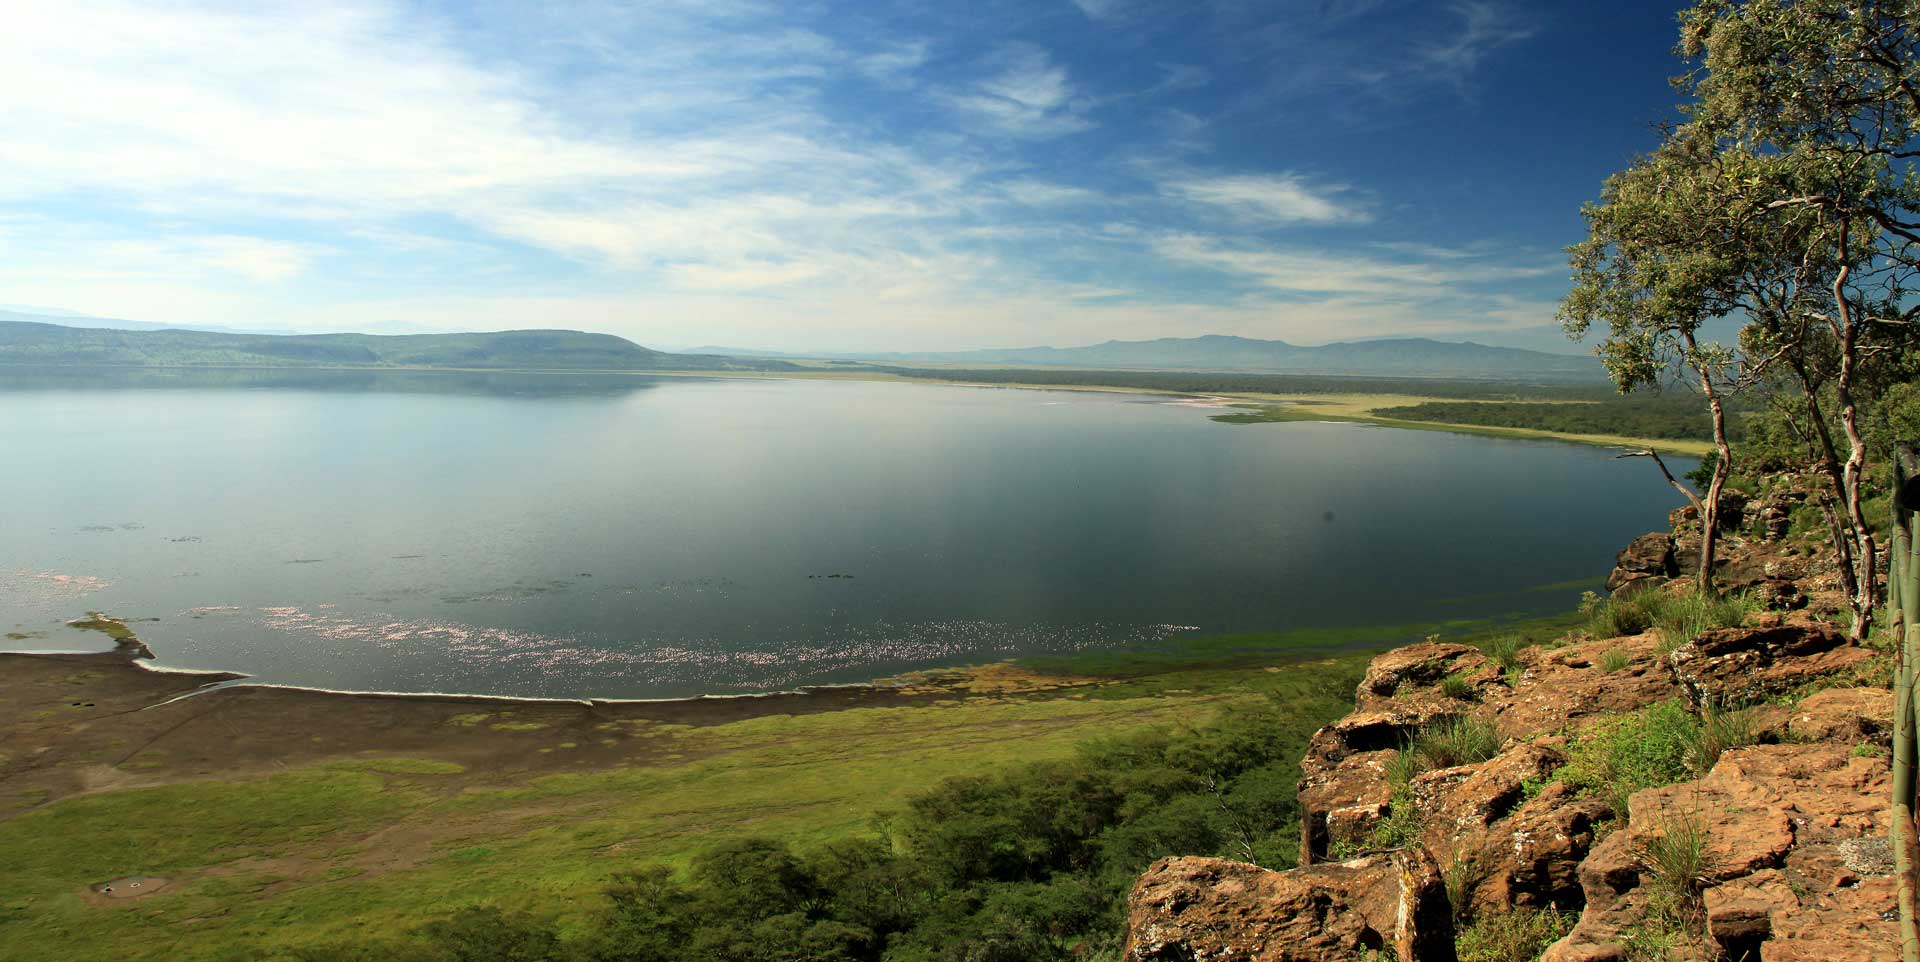 Kenya’s Incredible Lake Nakuru